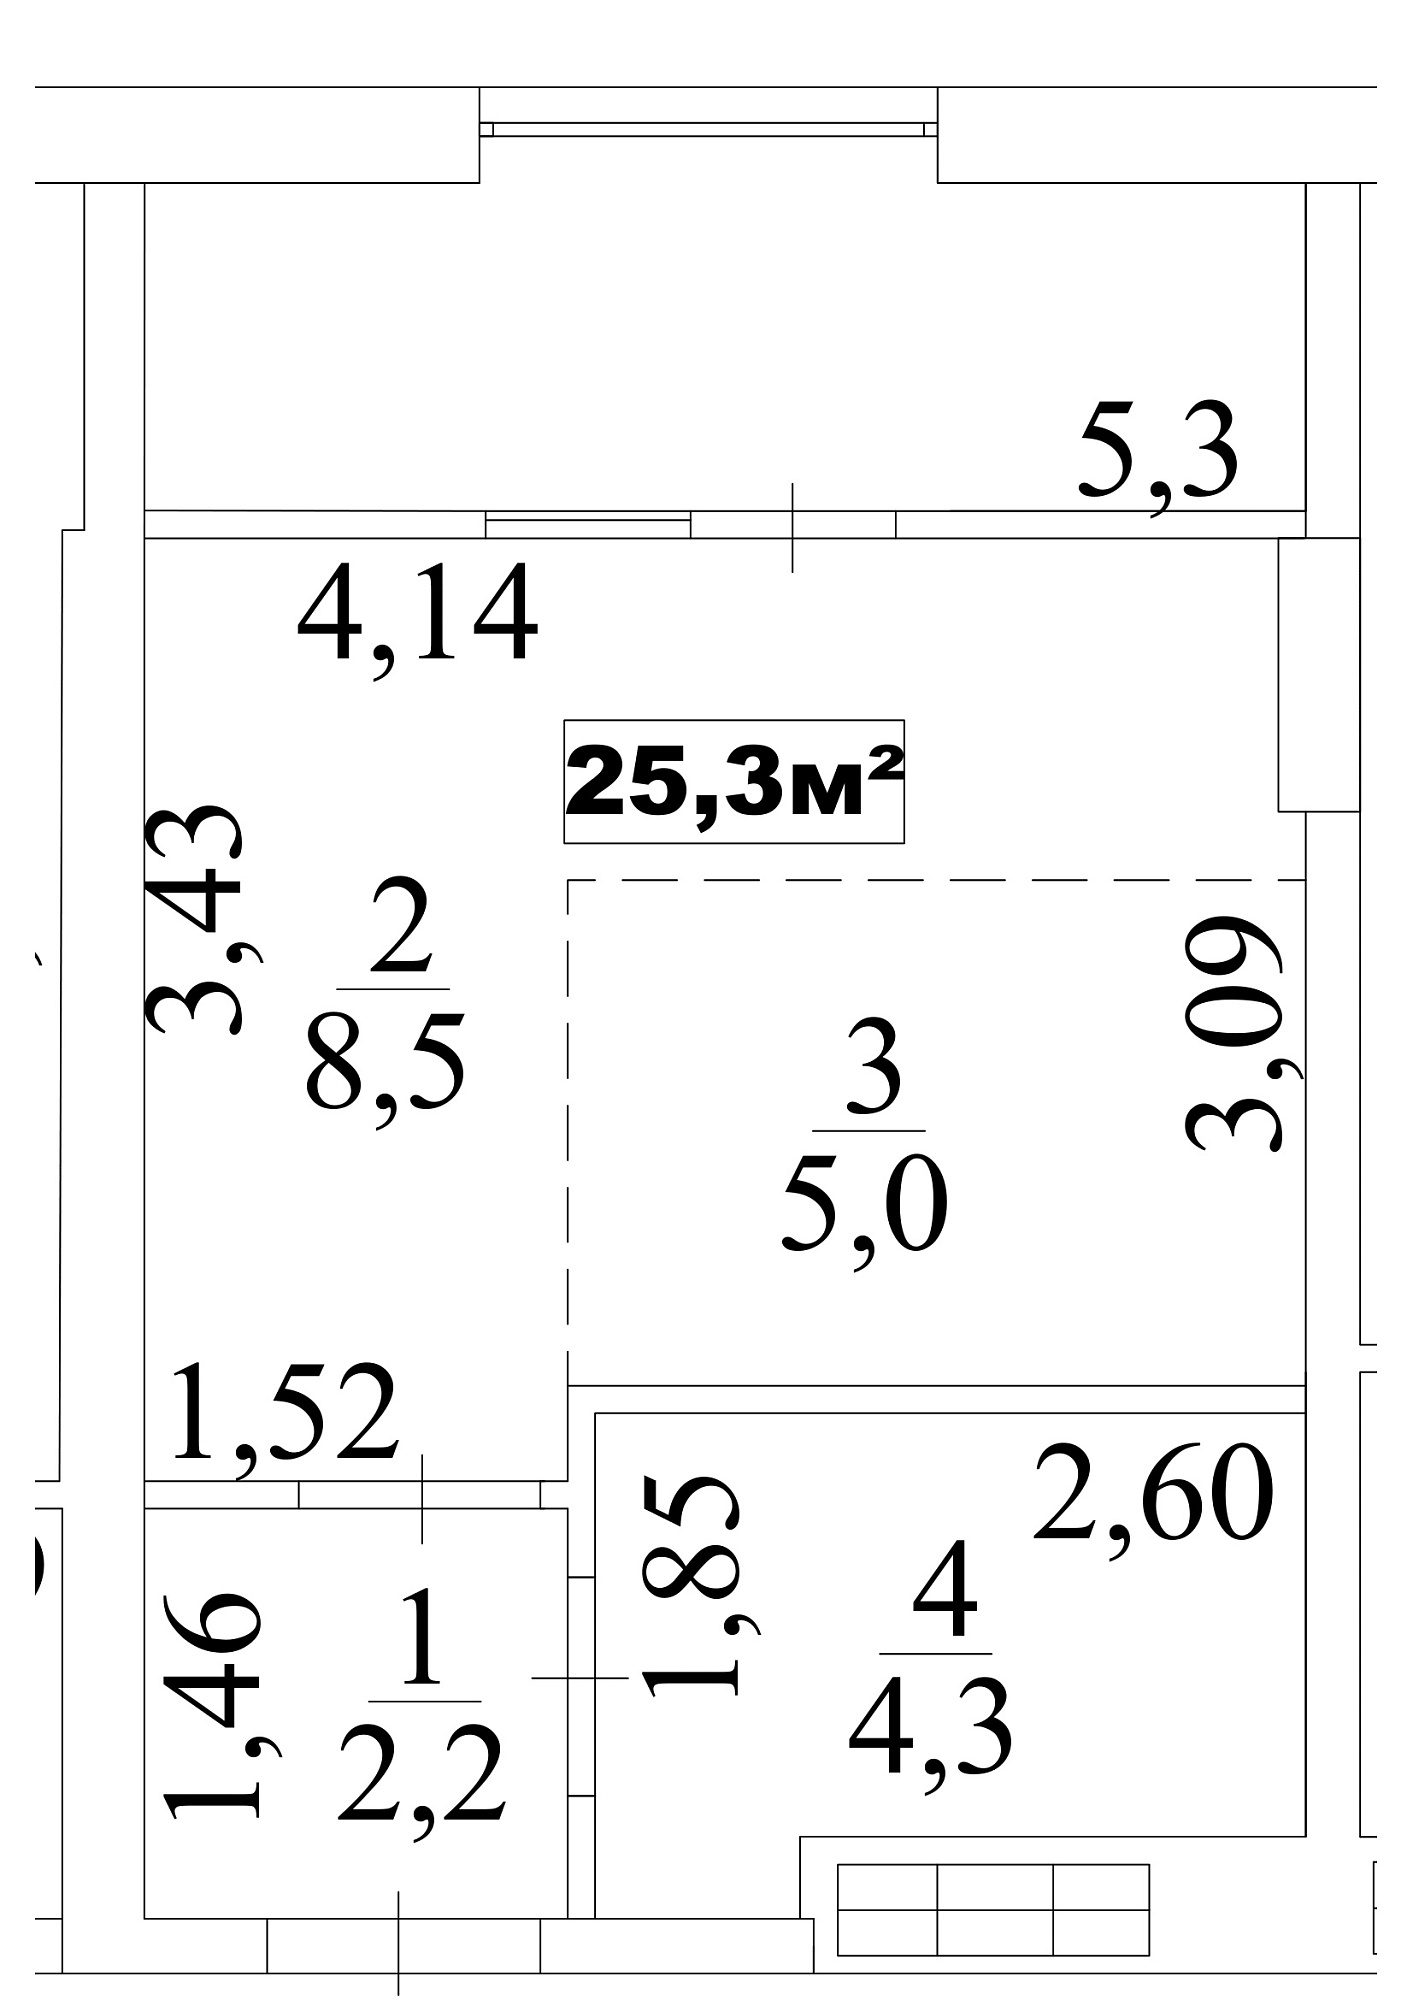 Планування Smart-квартира площею 25.3м2, AB-10-10/0084в.